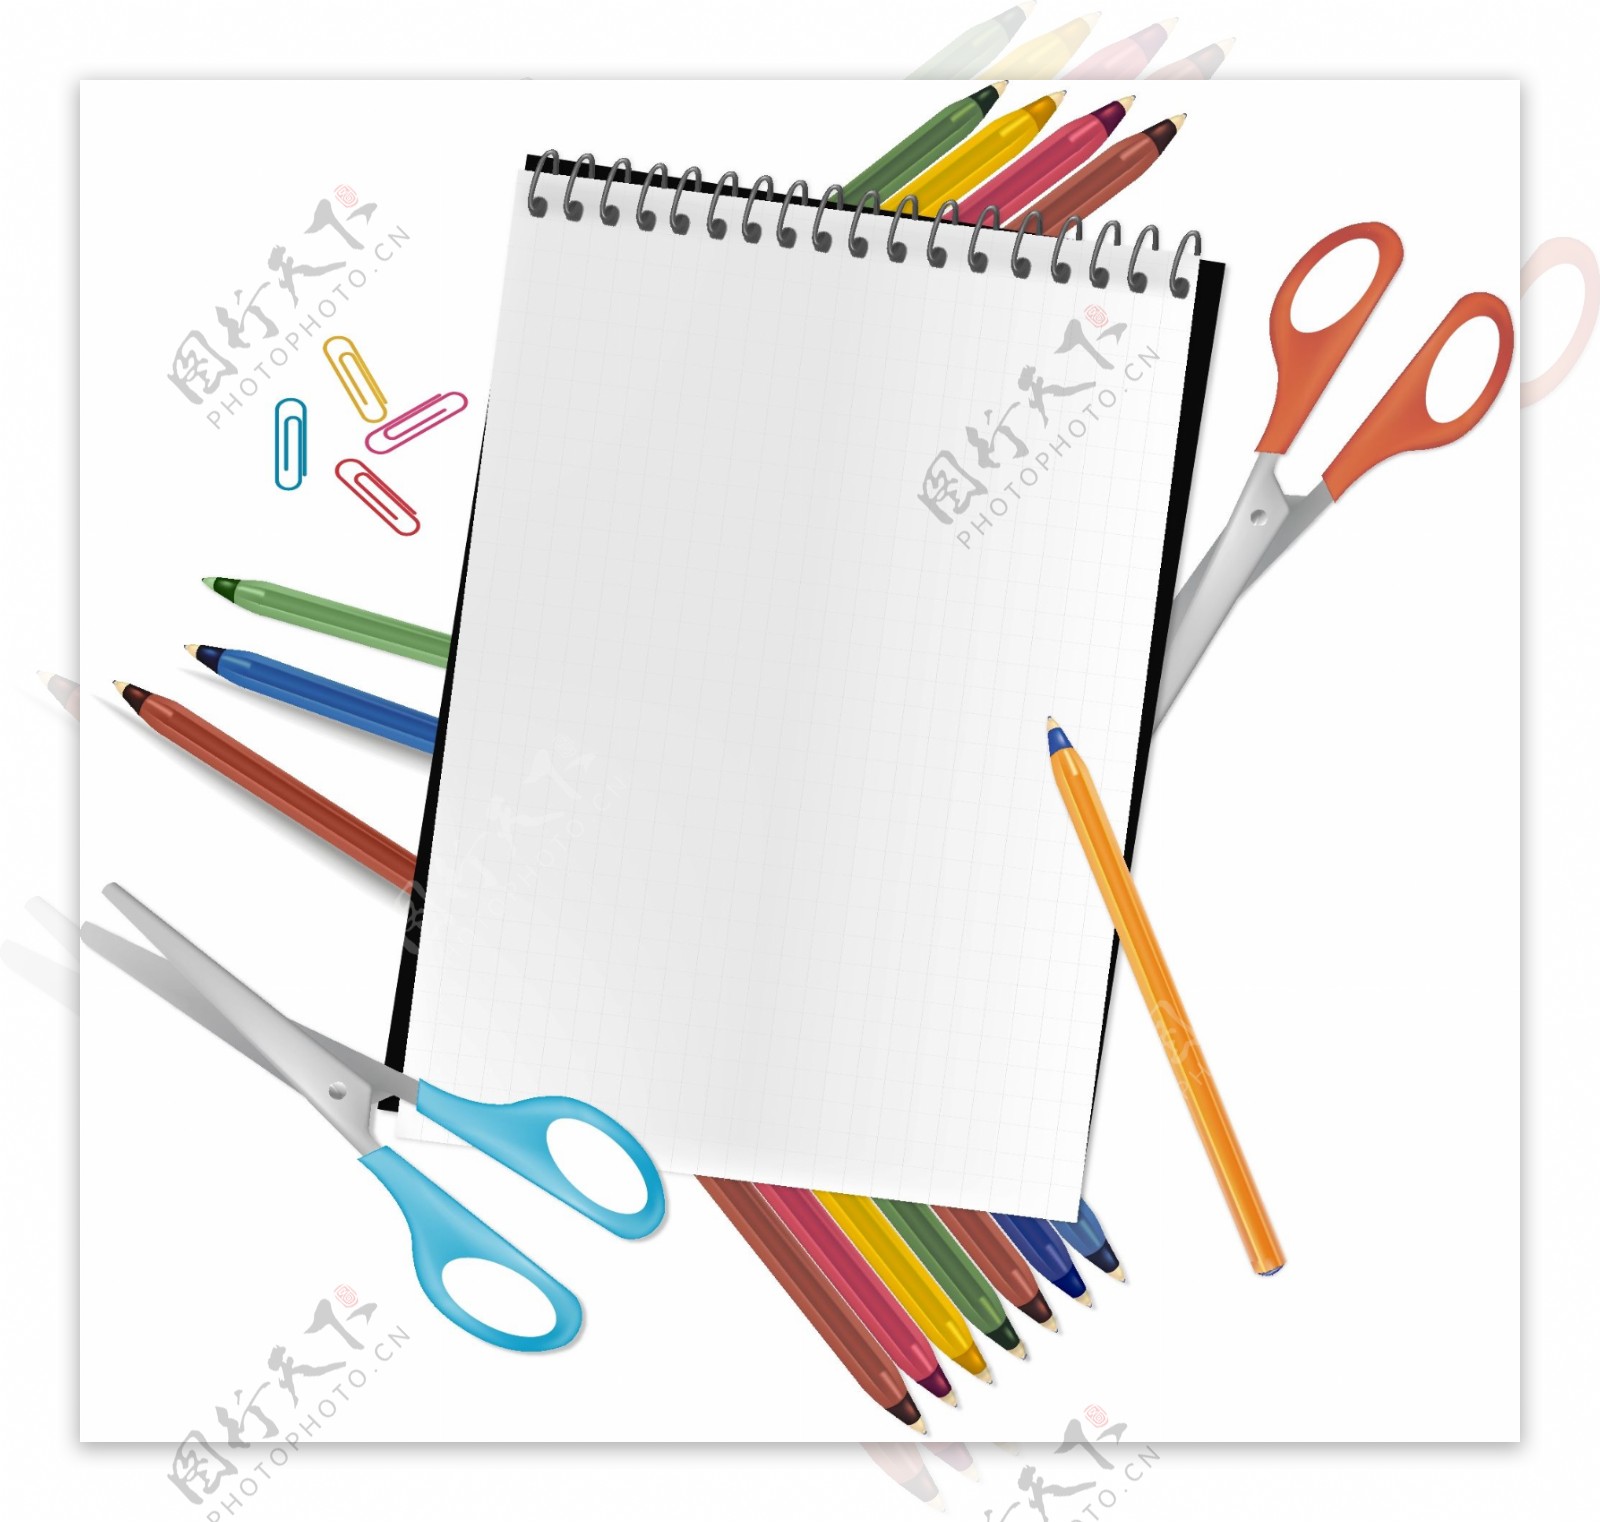 彩色铅笔剪刀与记事本矢量图